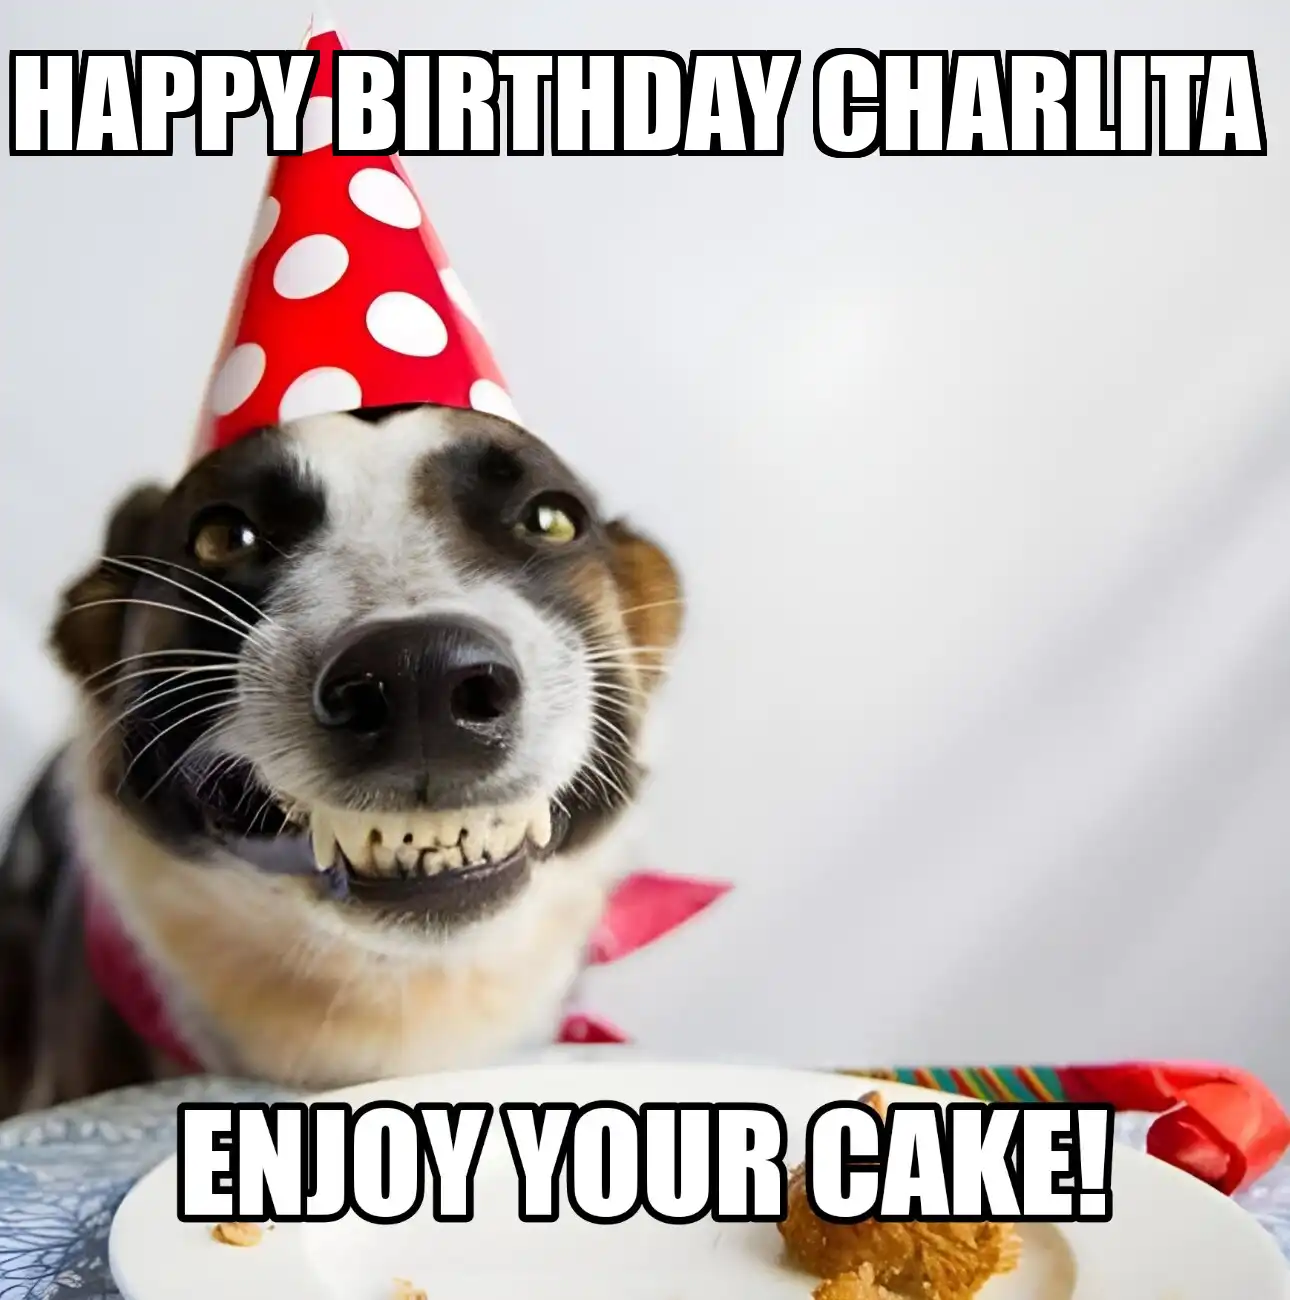 Happy Birthday Charlita Enjoy Your Cake Dog Meme